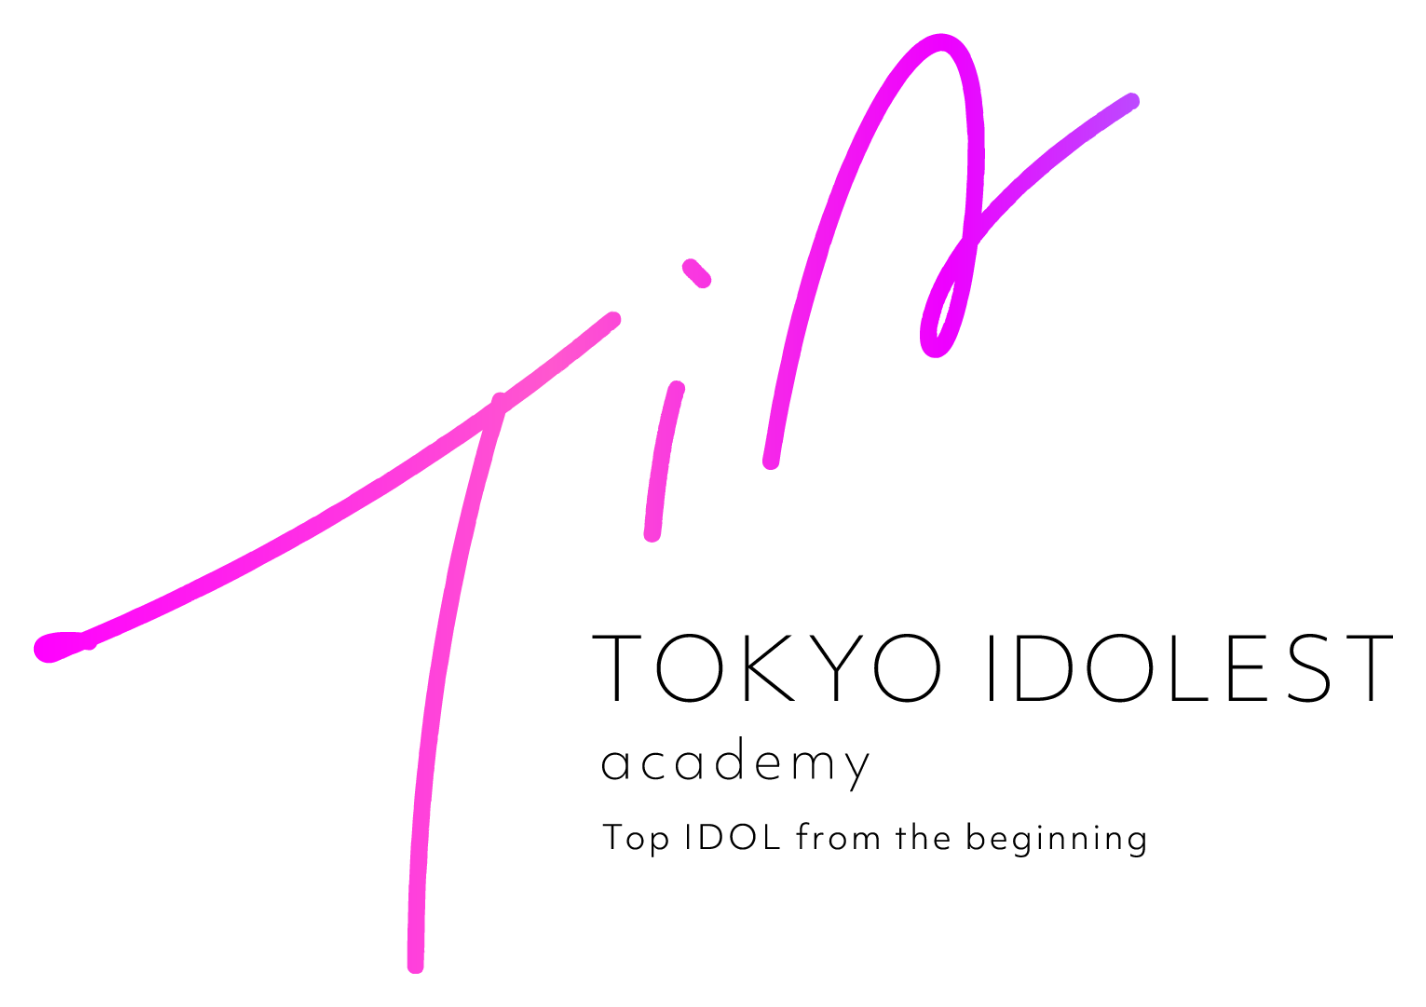 TOKYO IDOLEST academy 渋谷発のアイドル養成スクール